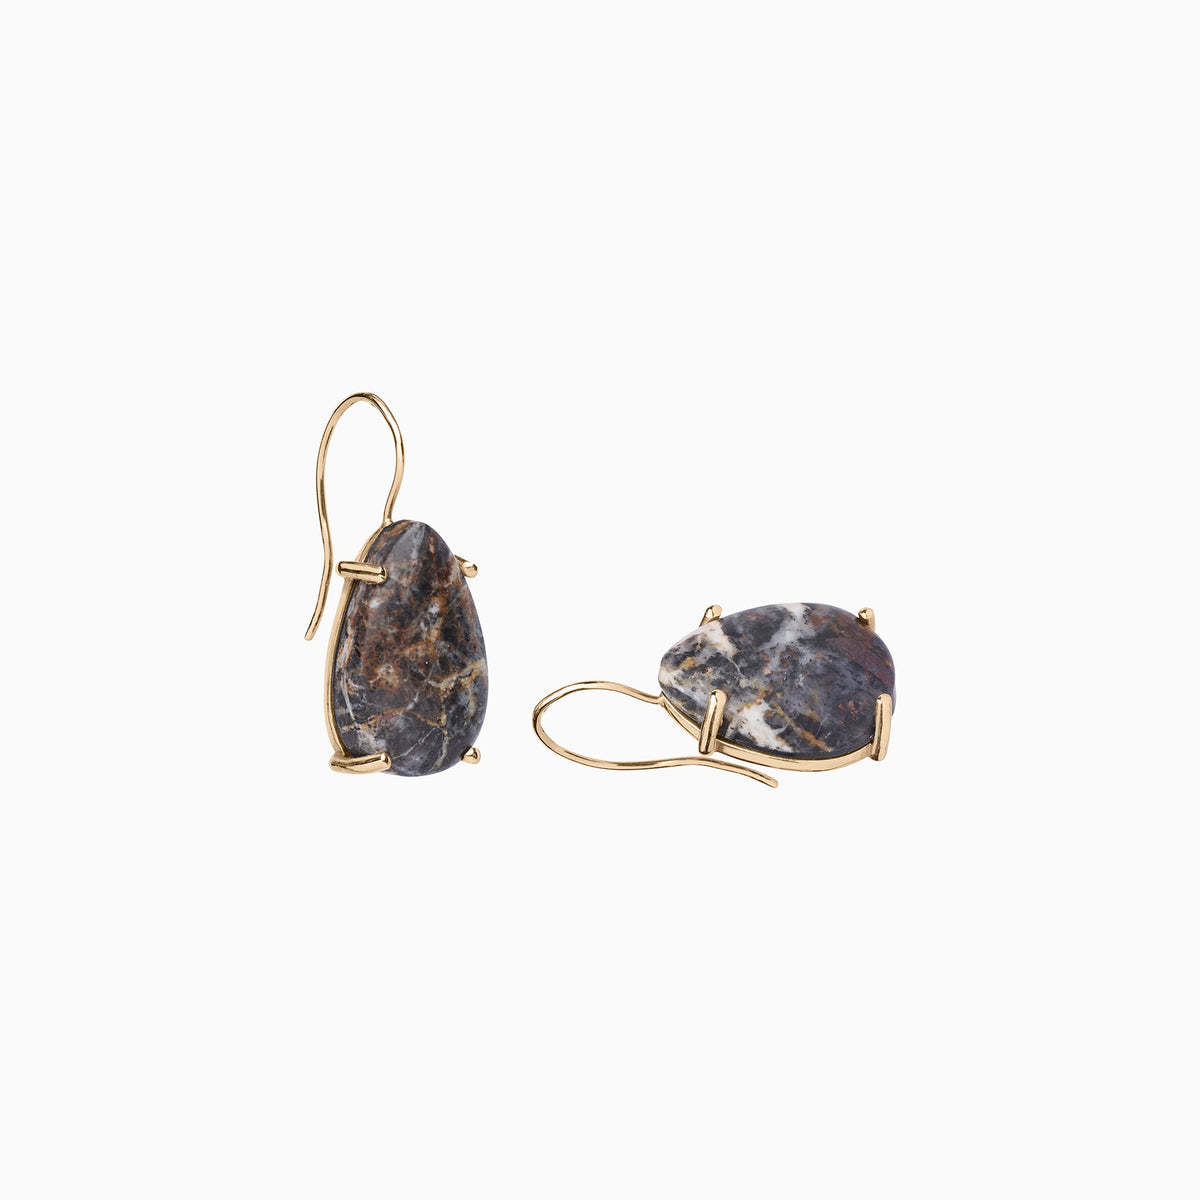 Nessa Designs Jewelry | Earrings | White Buffalo Earrings